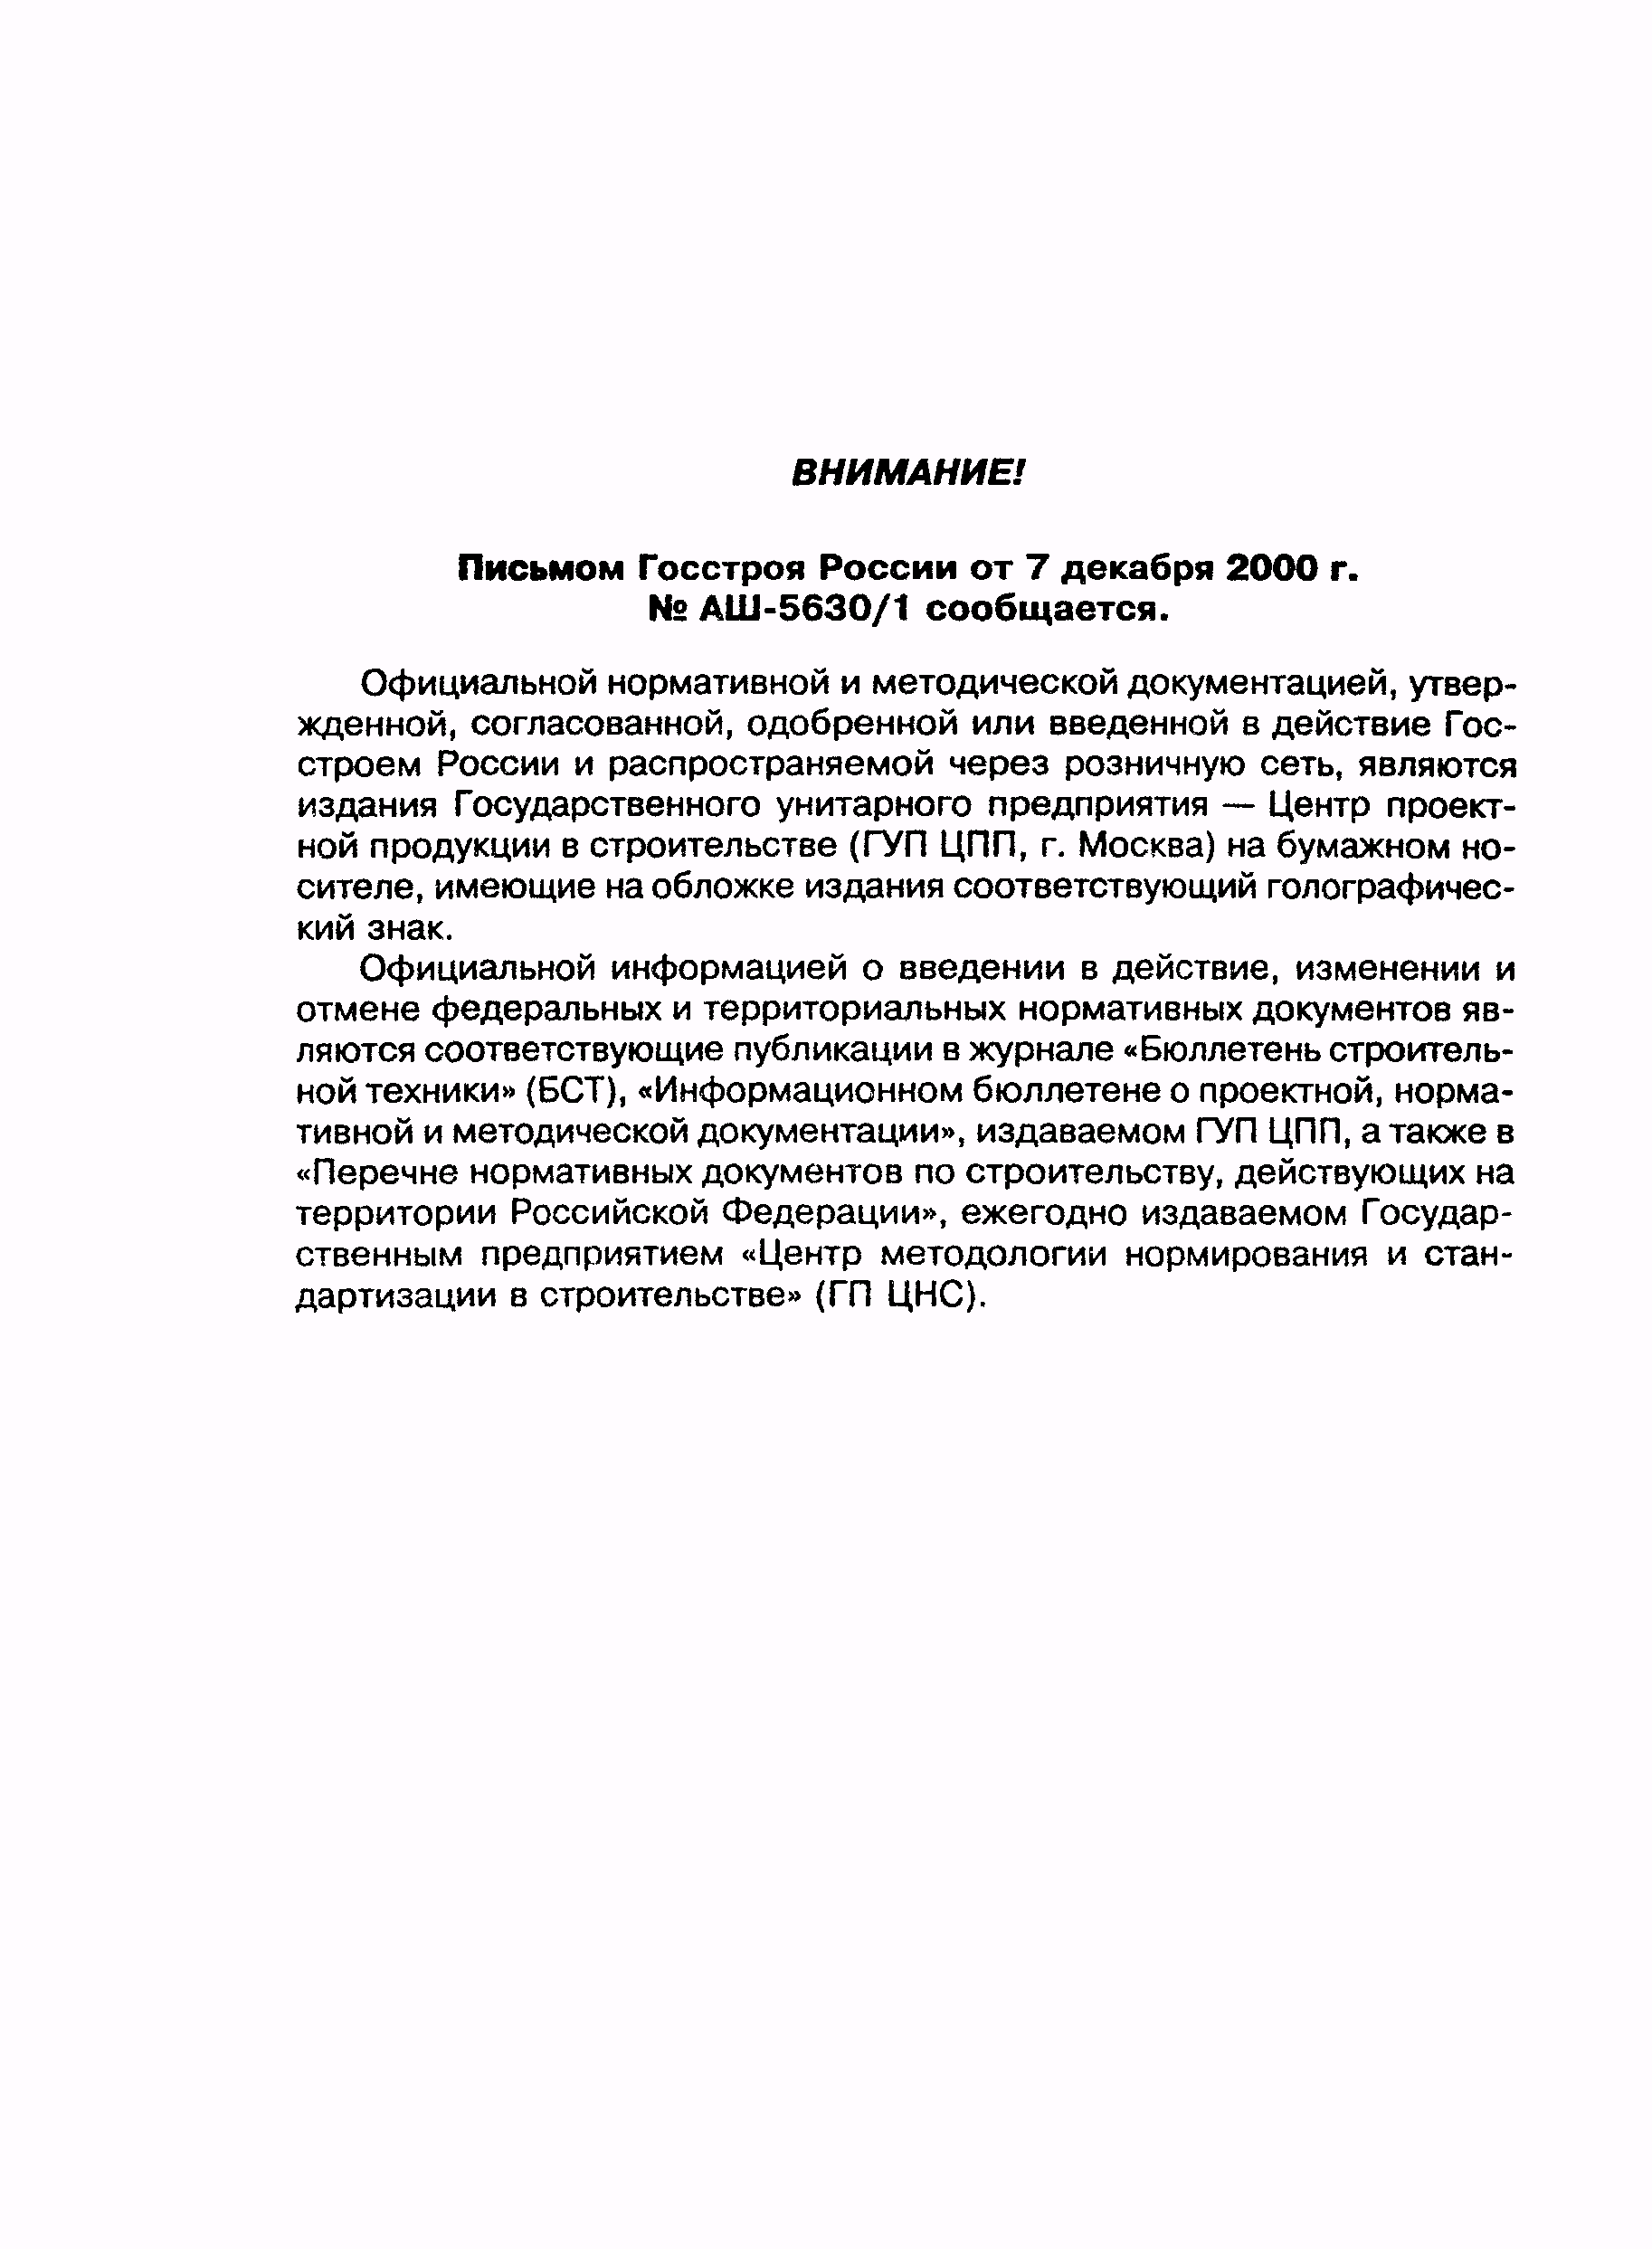 РДС 82-202-96